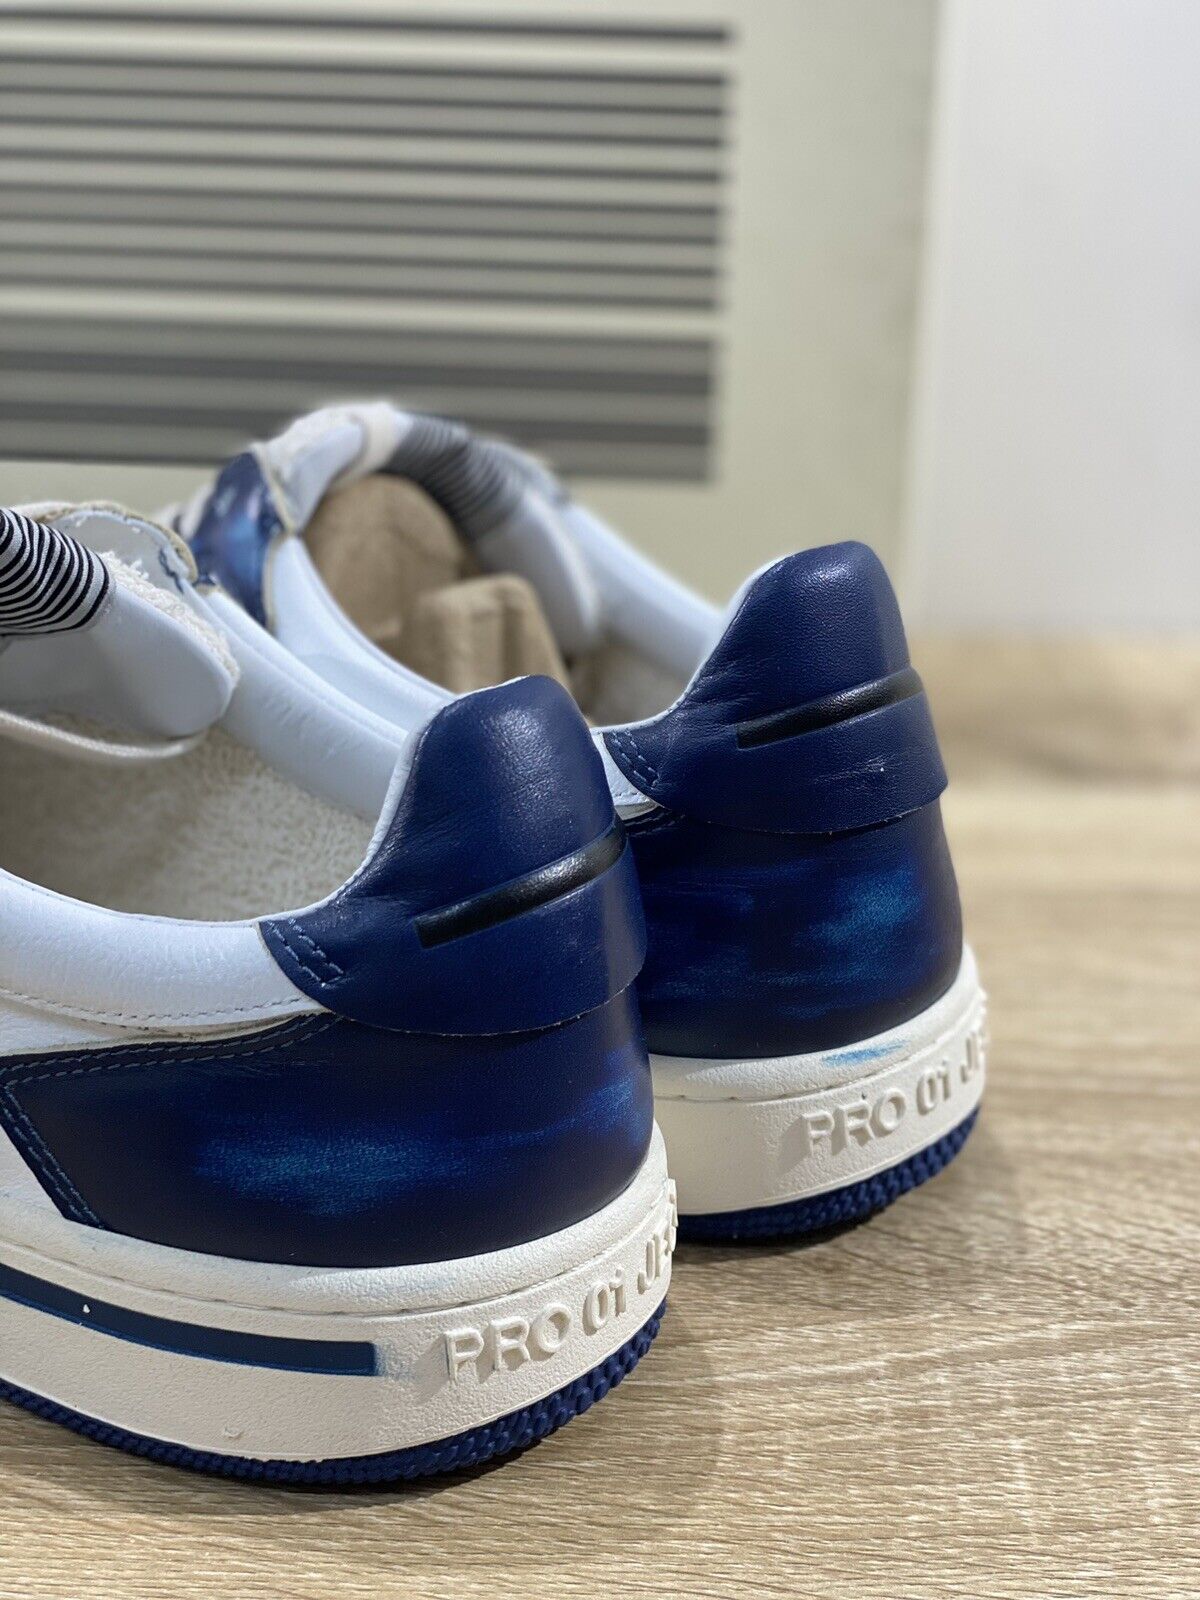 Project 001 Sneaker Uomo Pelle Bianca Blu Casual Shoes Men Sneaker 45